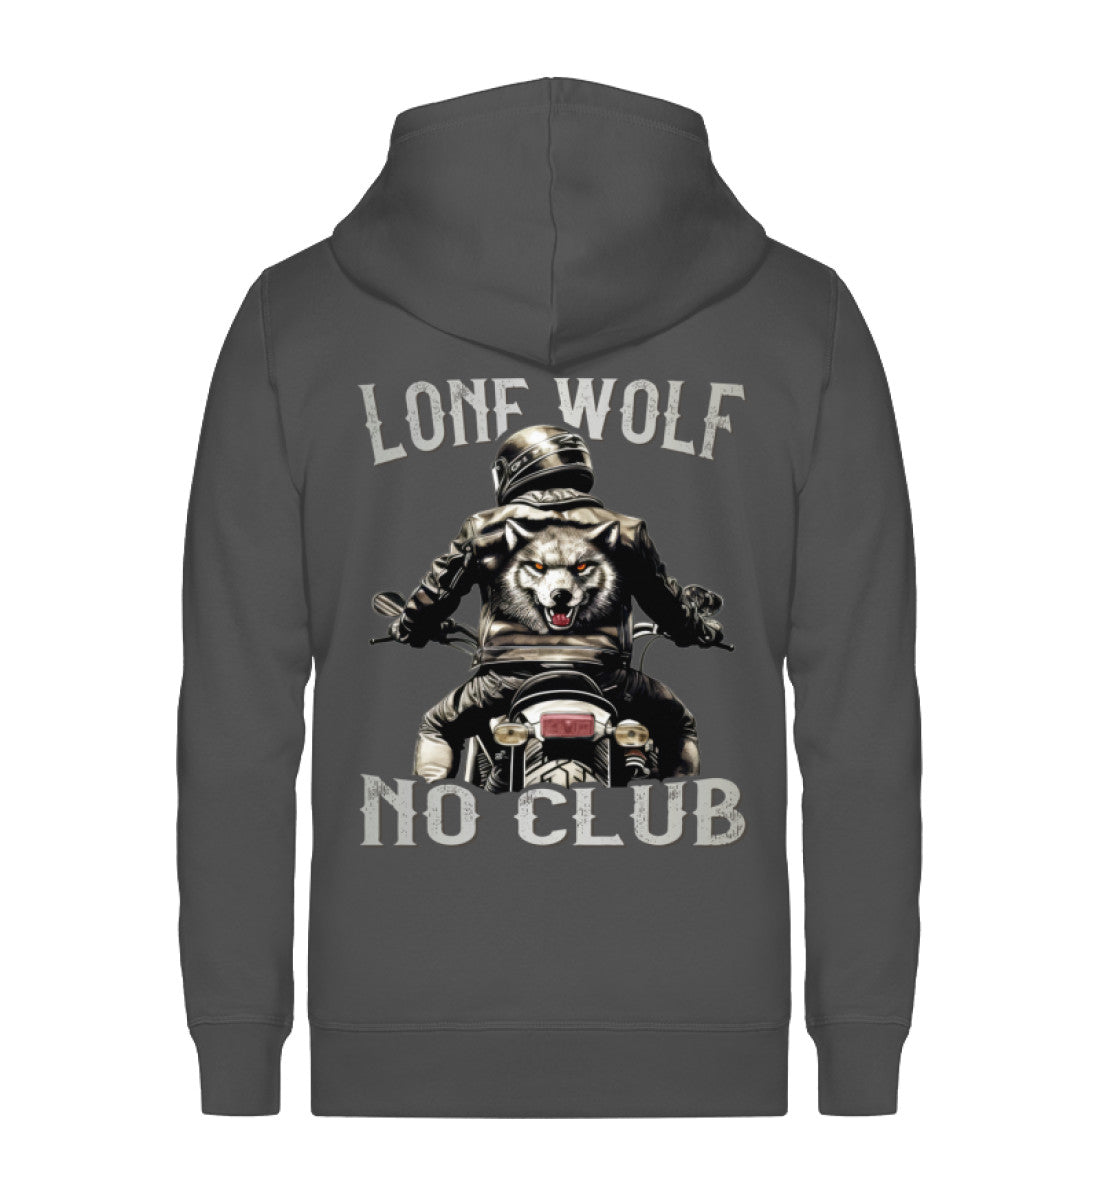 Eine Reißverschluss-Jacke für Motorradfahrer von Wingbikers mit dem Aufdruck, Lone Wolf - No Club, in dunkelgrau.